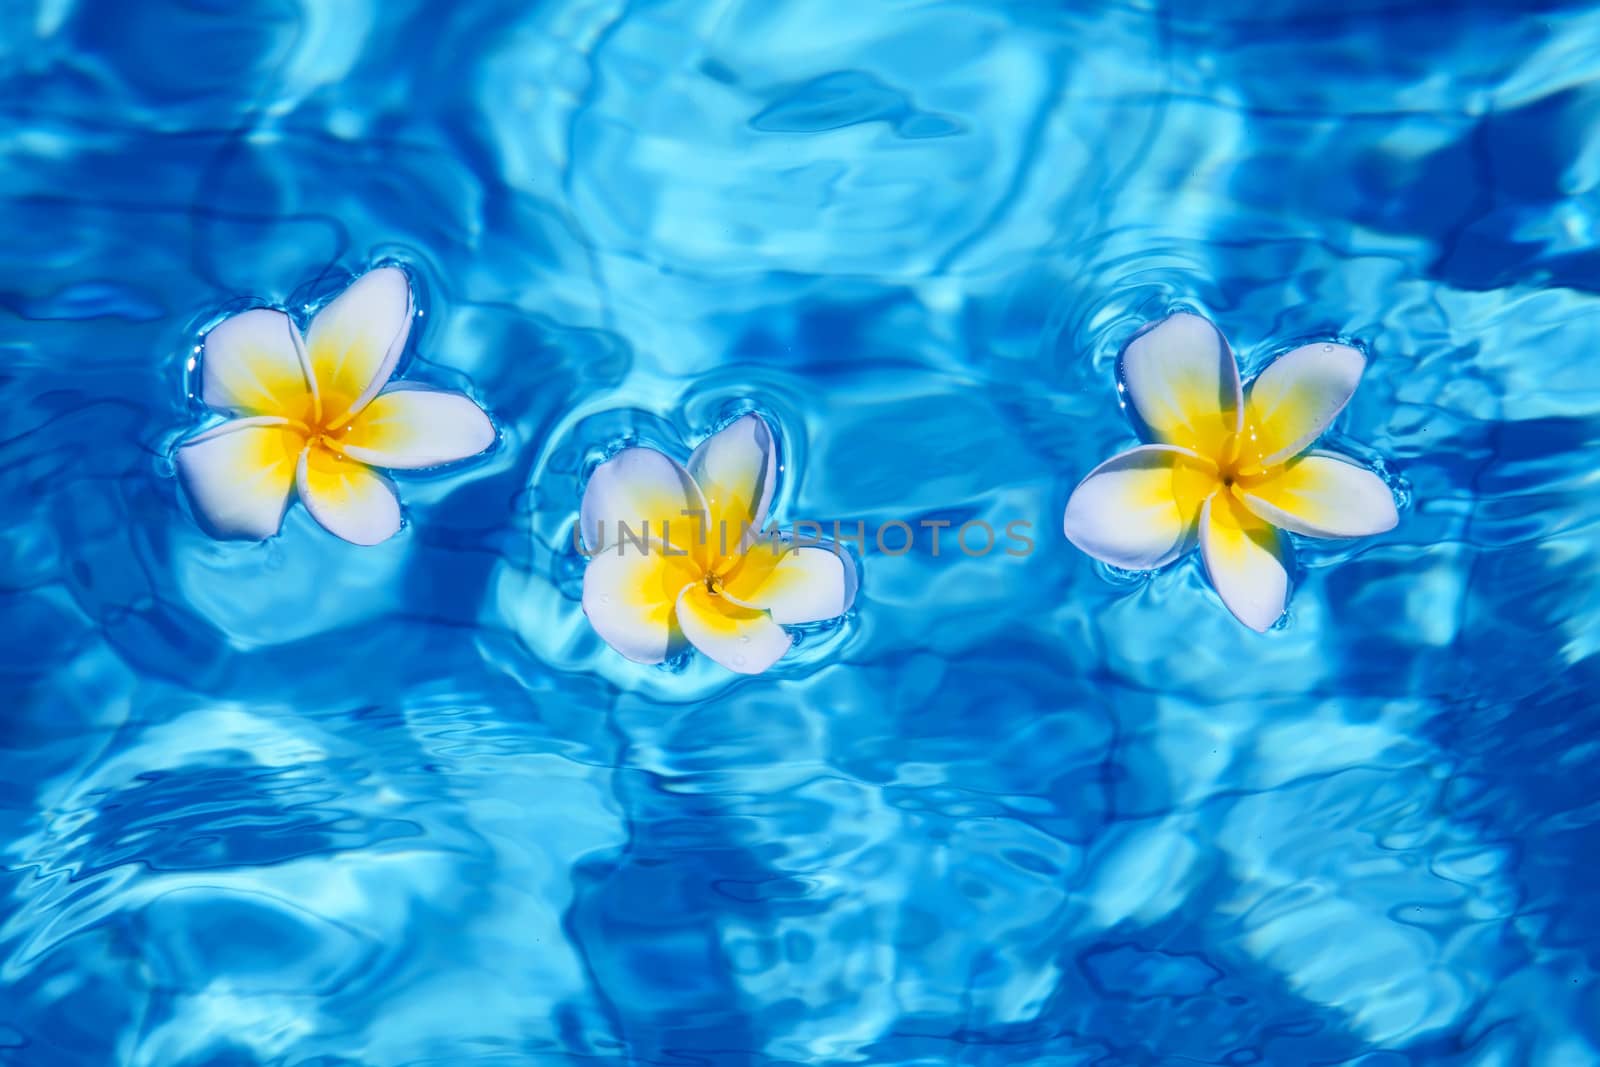 Flower in blue water by swisshippo